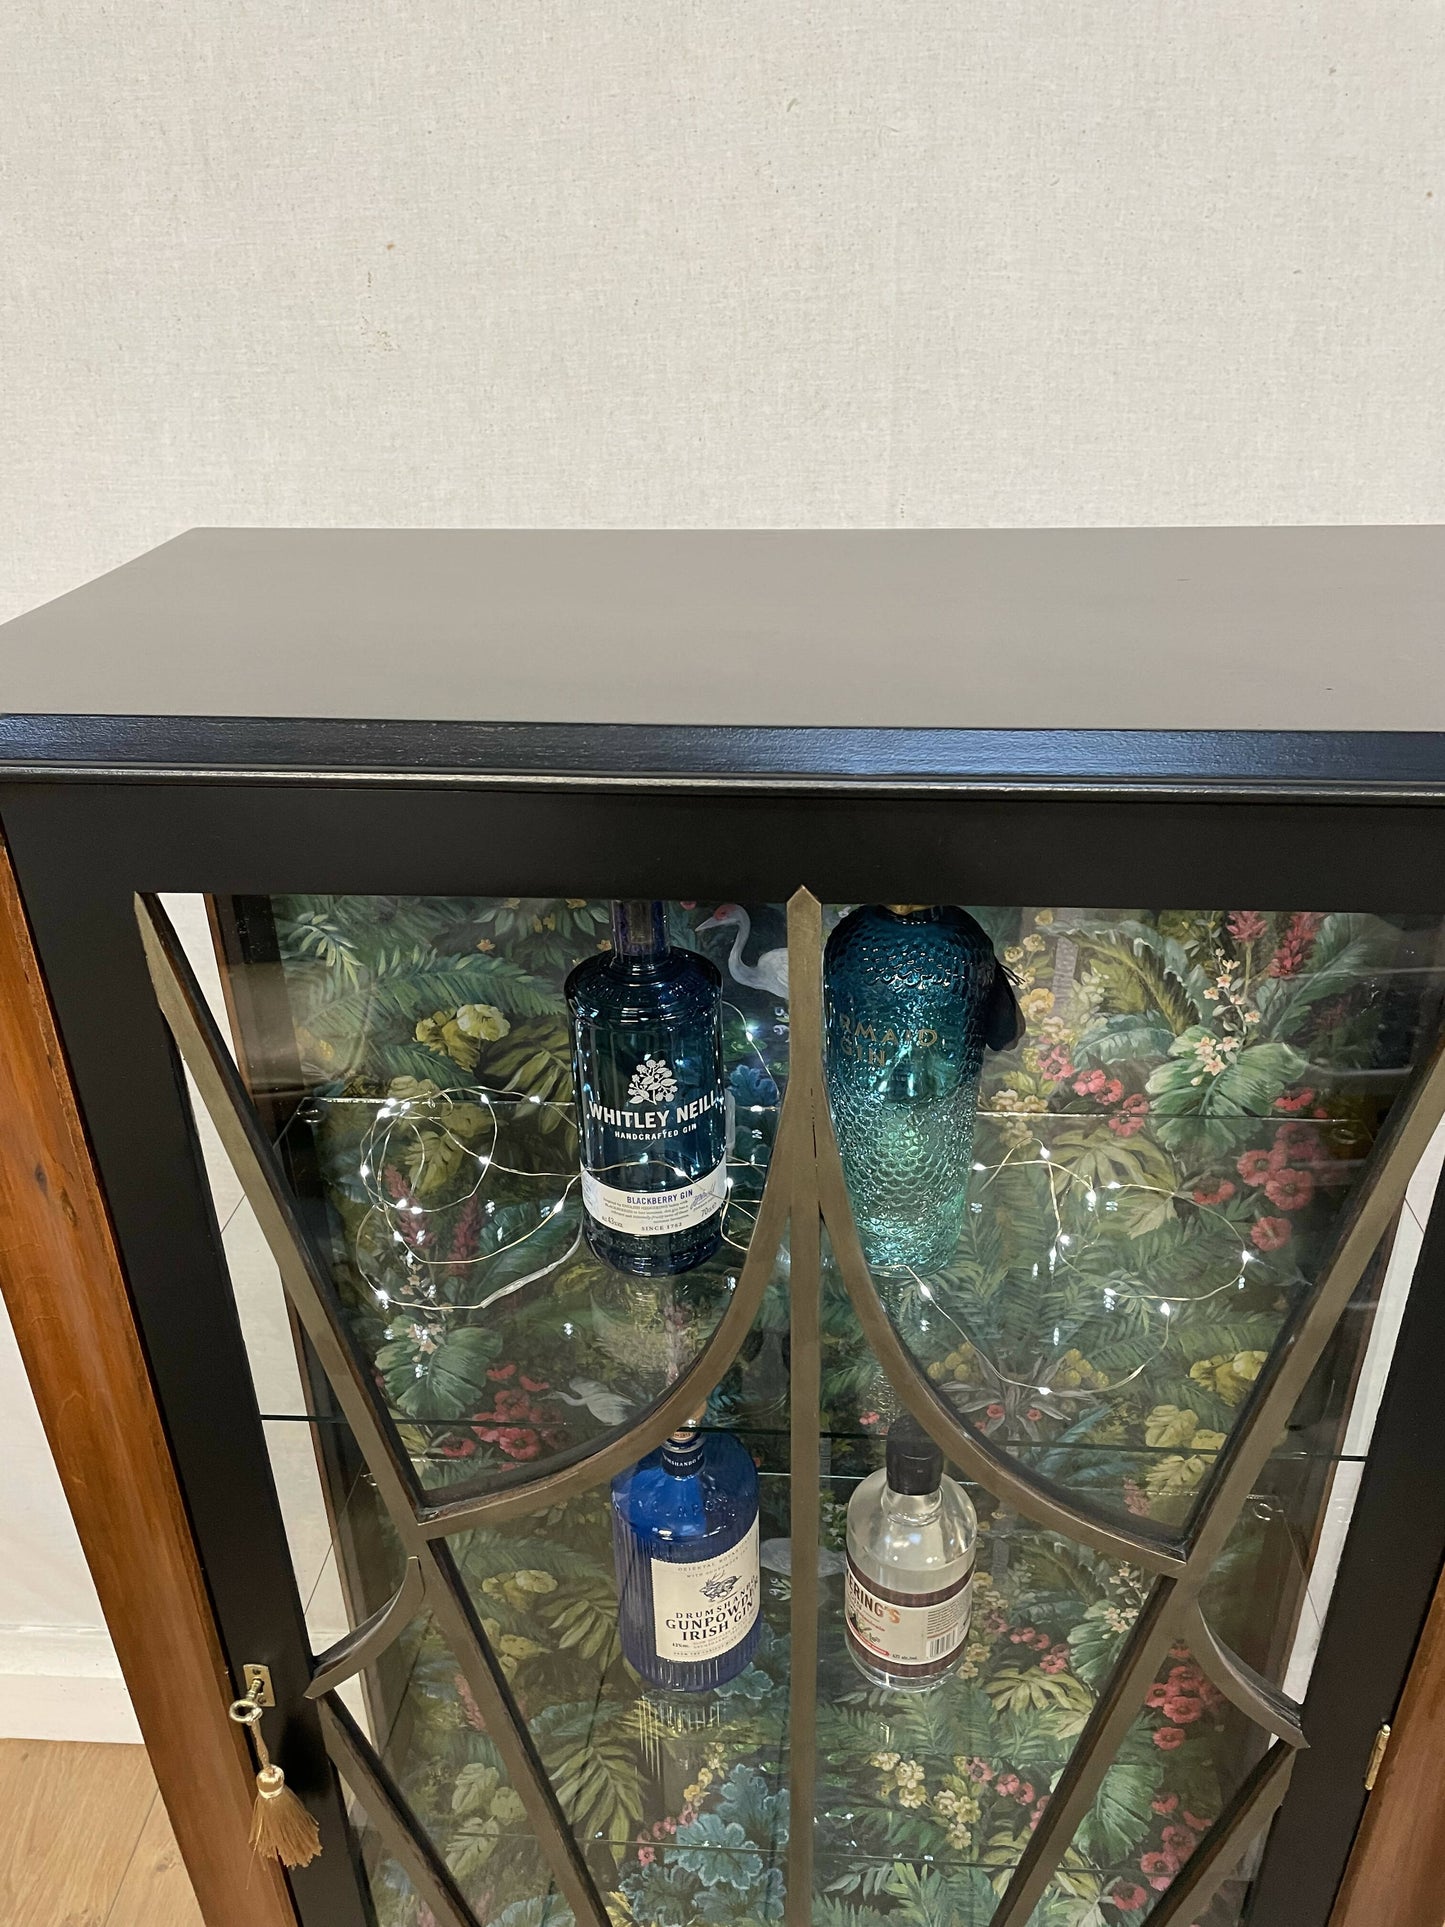 Sold - Vintage Black Gin/ Cocktail Drinks Cabinet